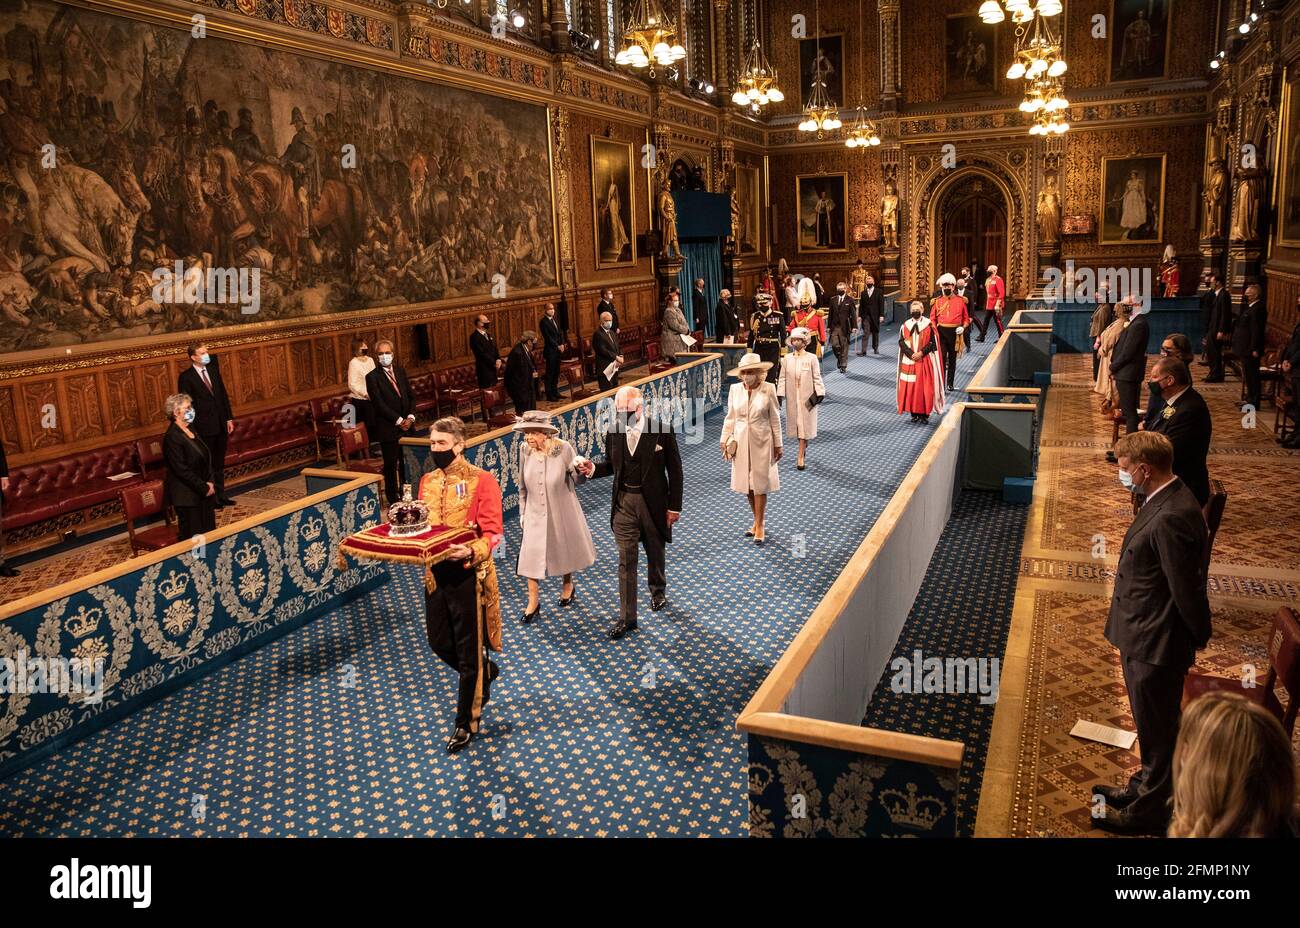 La reine Elizabeth II, accompagnée du prince de Galles, passe par la Galerie royale avant de donner le discours de la reine lors de l'ouverture du Parlement à la Chambre des Lords au Palais de Westminster à Londres. Date de la photo: Mardi 11 mai 2021. Banque D'Images